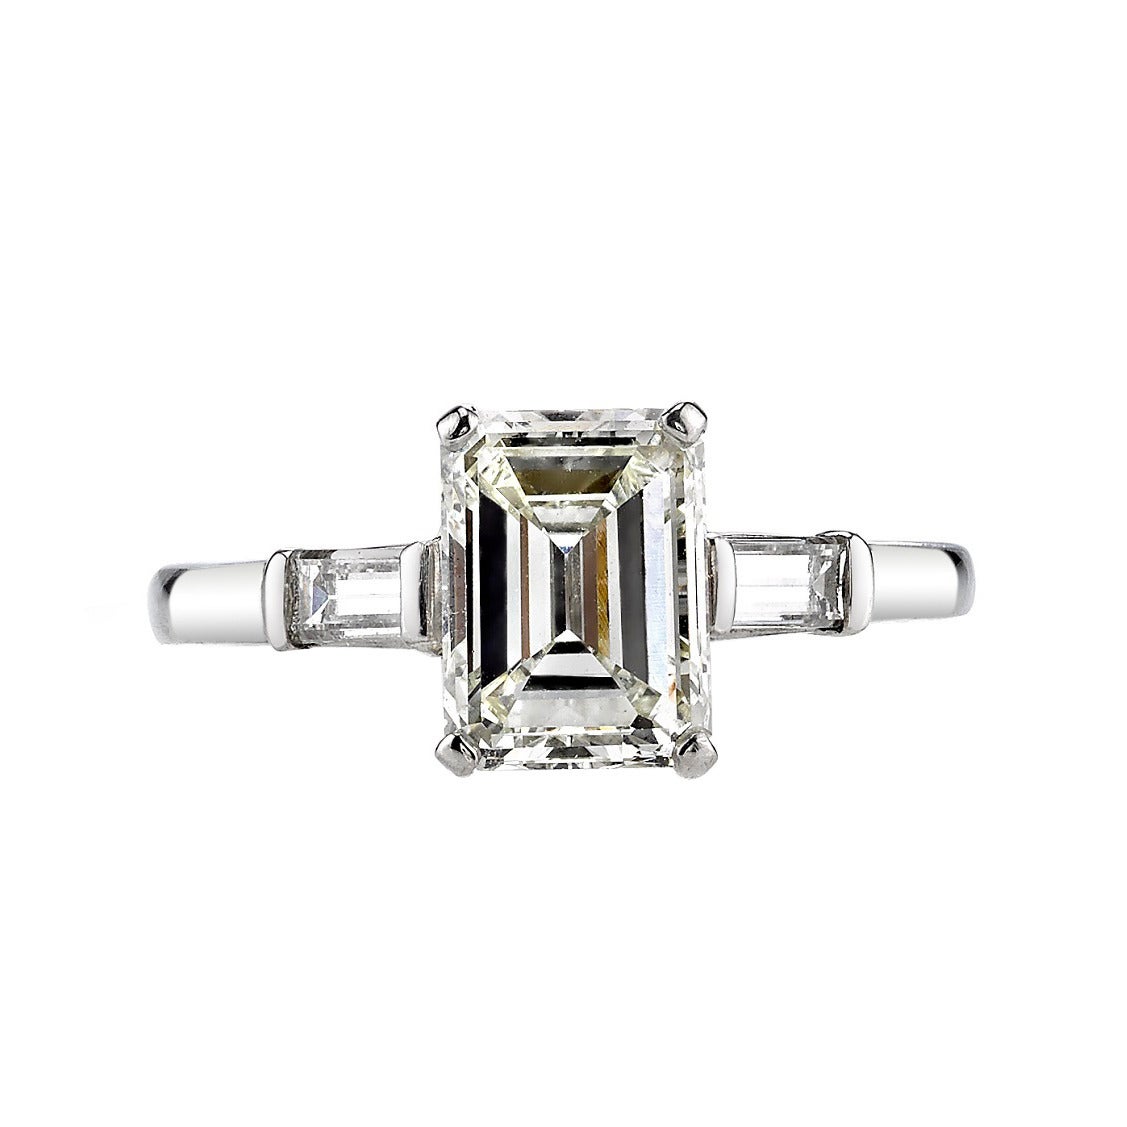 1.99 Carat Emerald Cut Diamond Platinum Engagement Ring